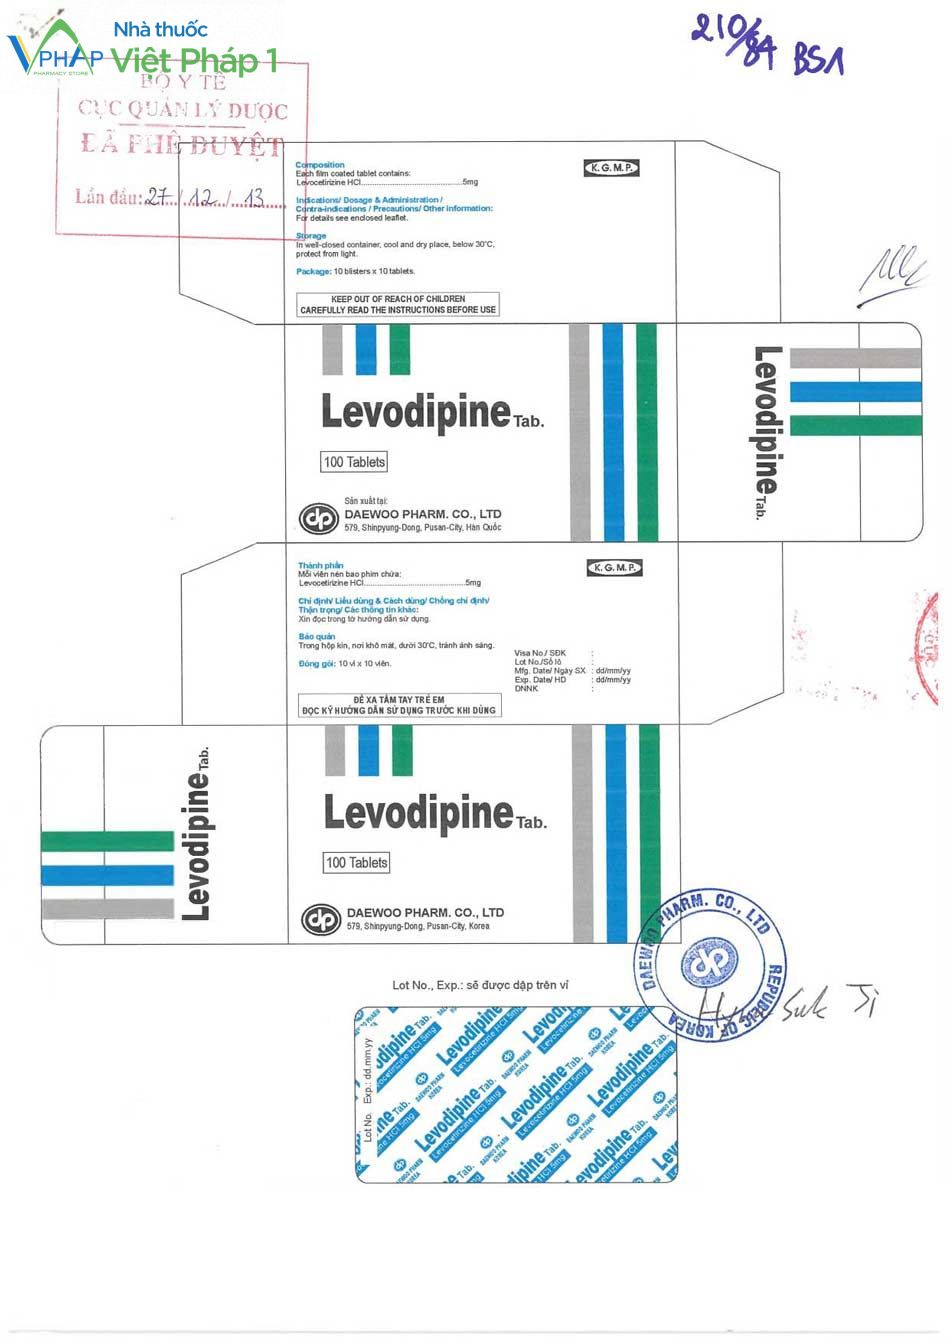 Mẫu bao bì của thuốc Levodipine được Cục quản lý Dược phê duyệt